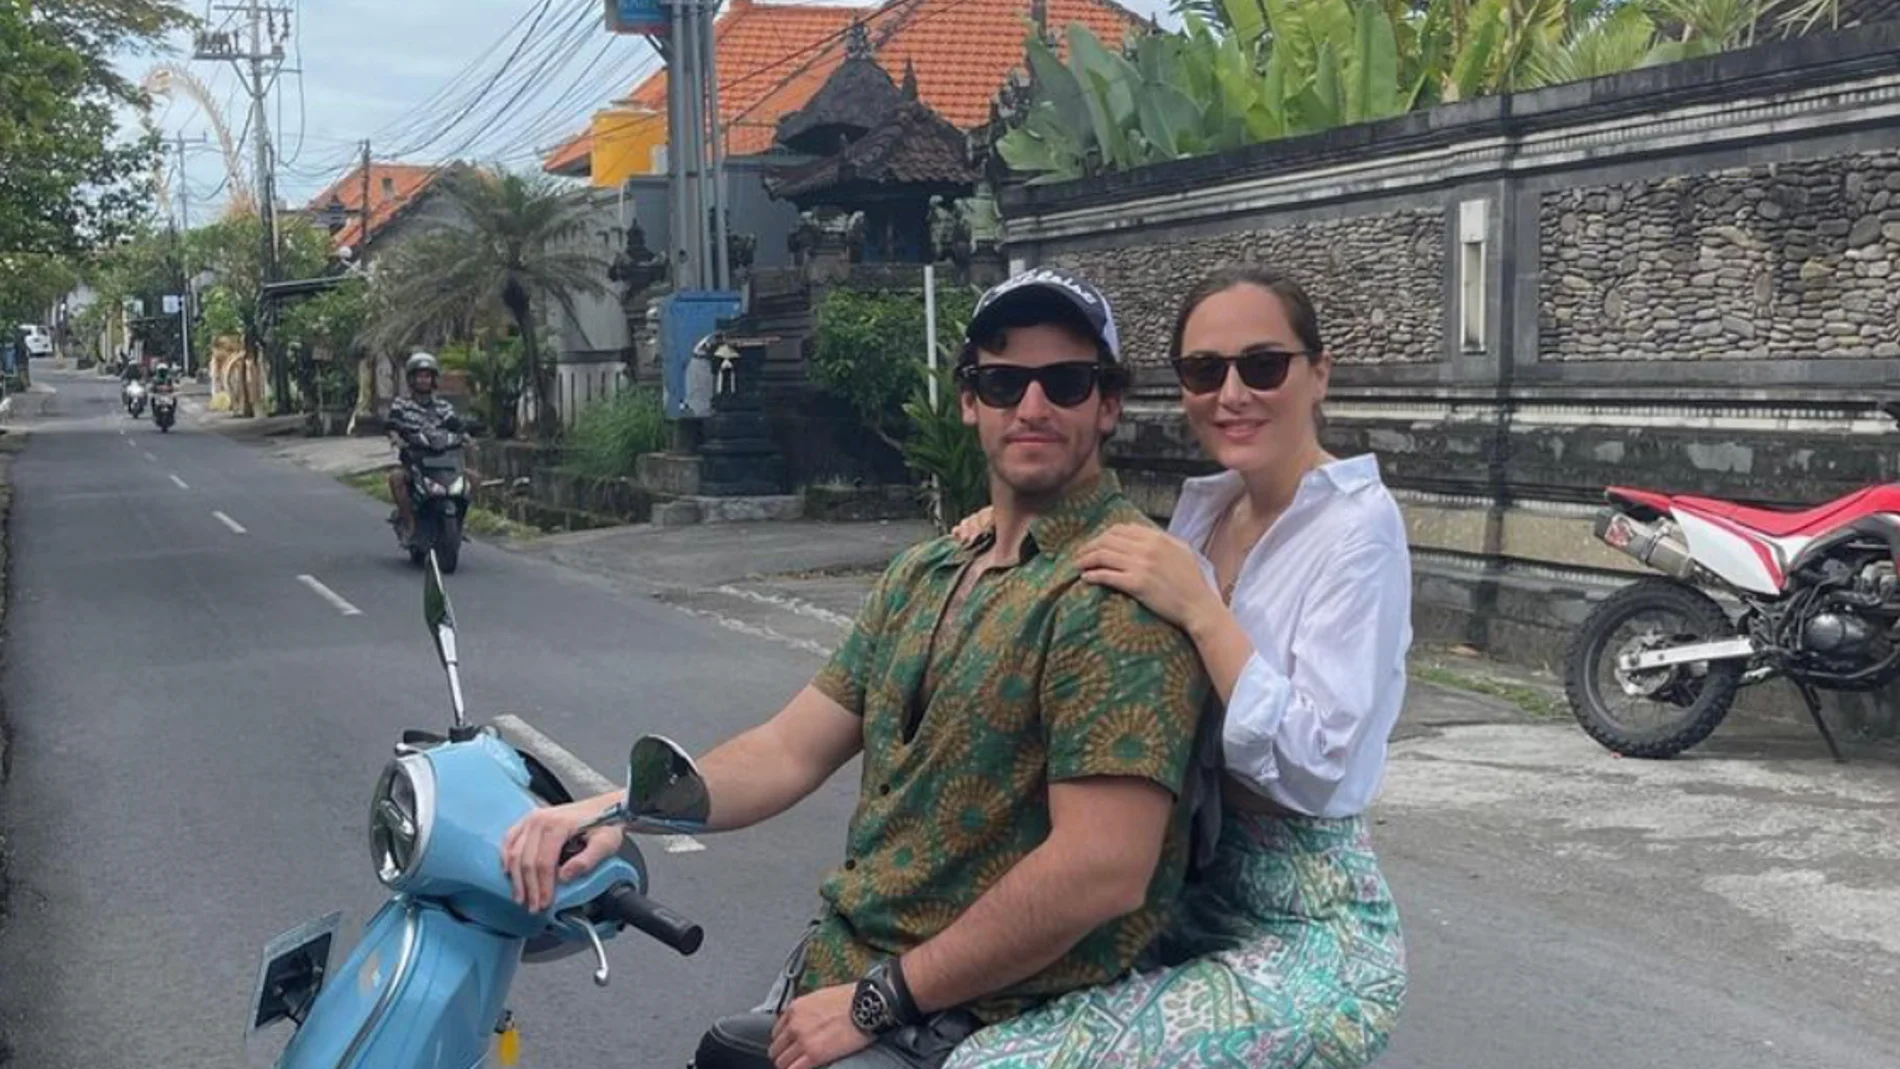 Tamara Falcó e Íñigo Onieva en Bali